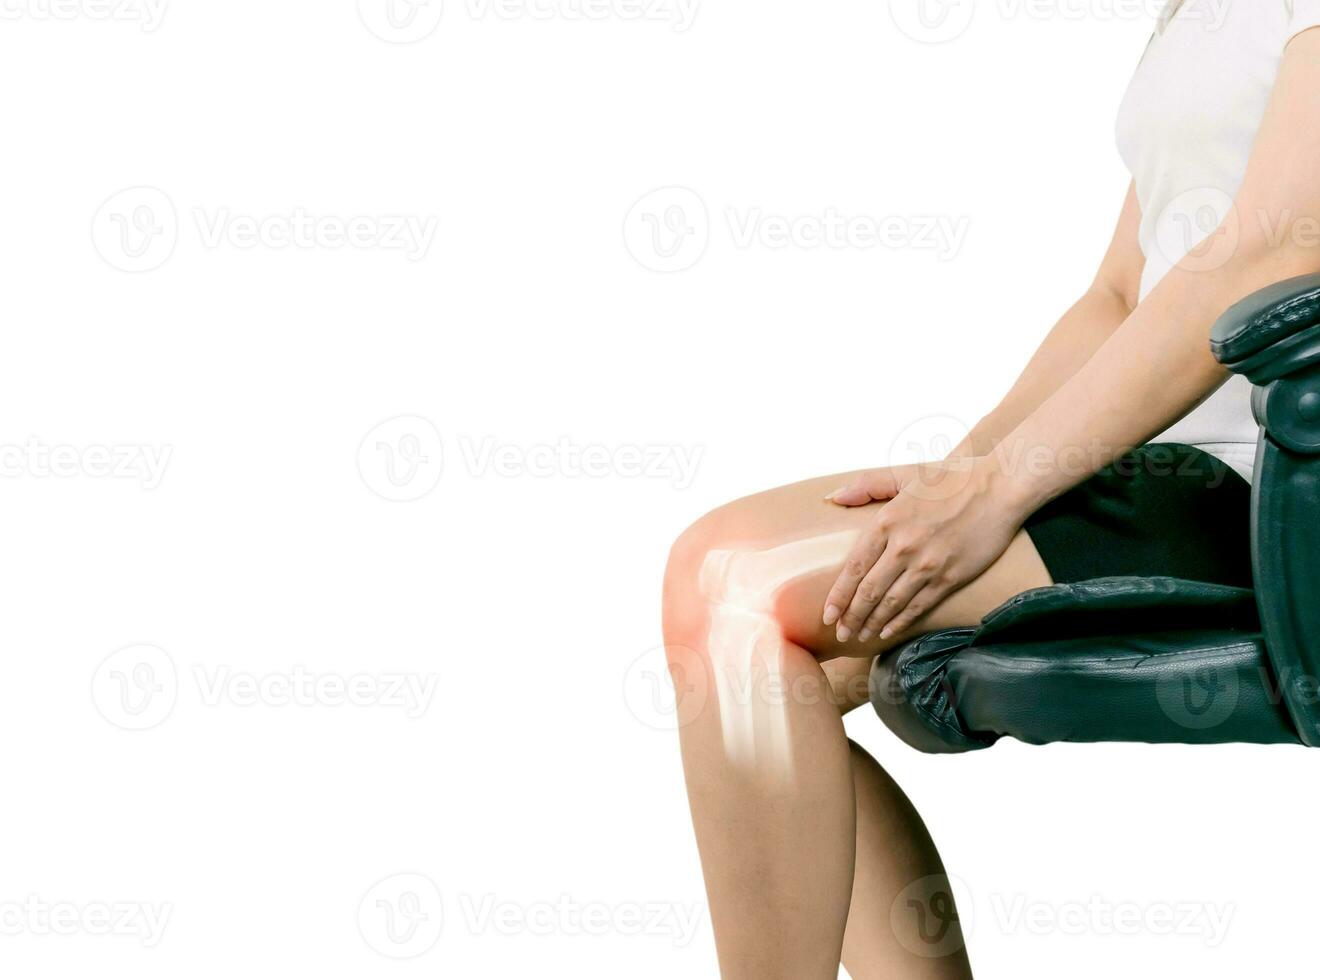 menselijk been artrose ontsteking van bot gewrichten foto